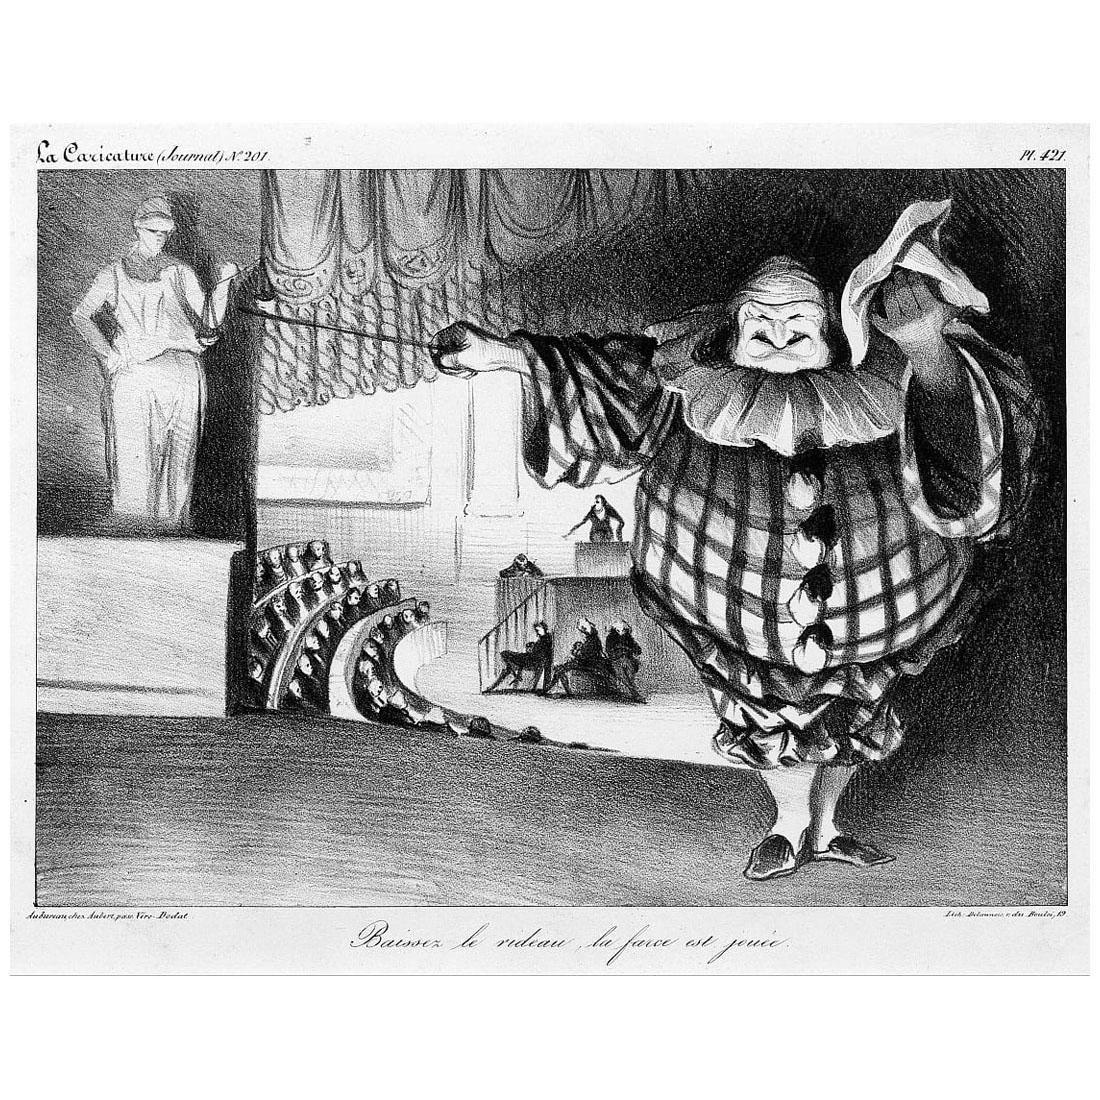 Honore Daumier. Baissez le rideau la farce est joue. 1834. Llithographie